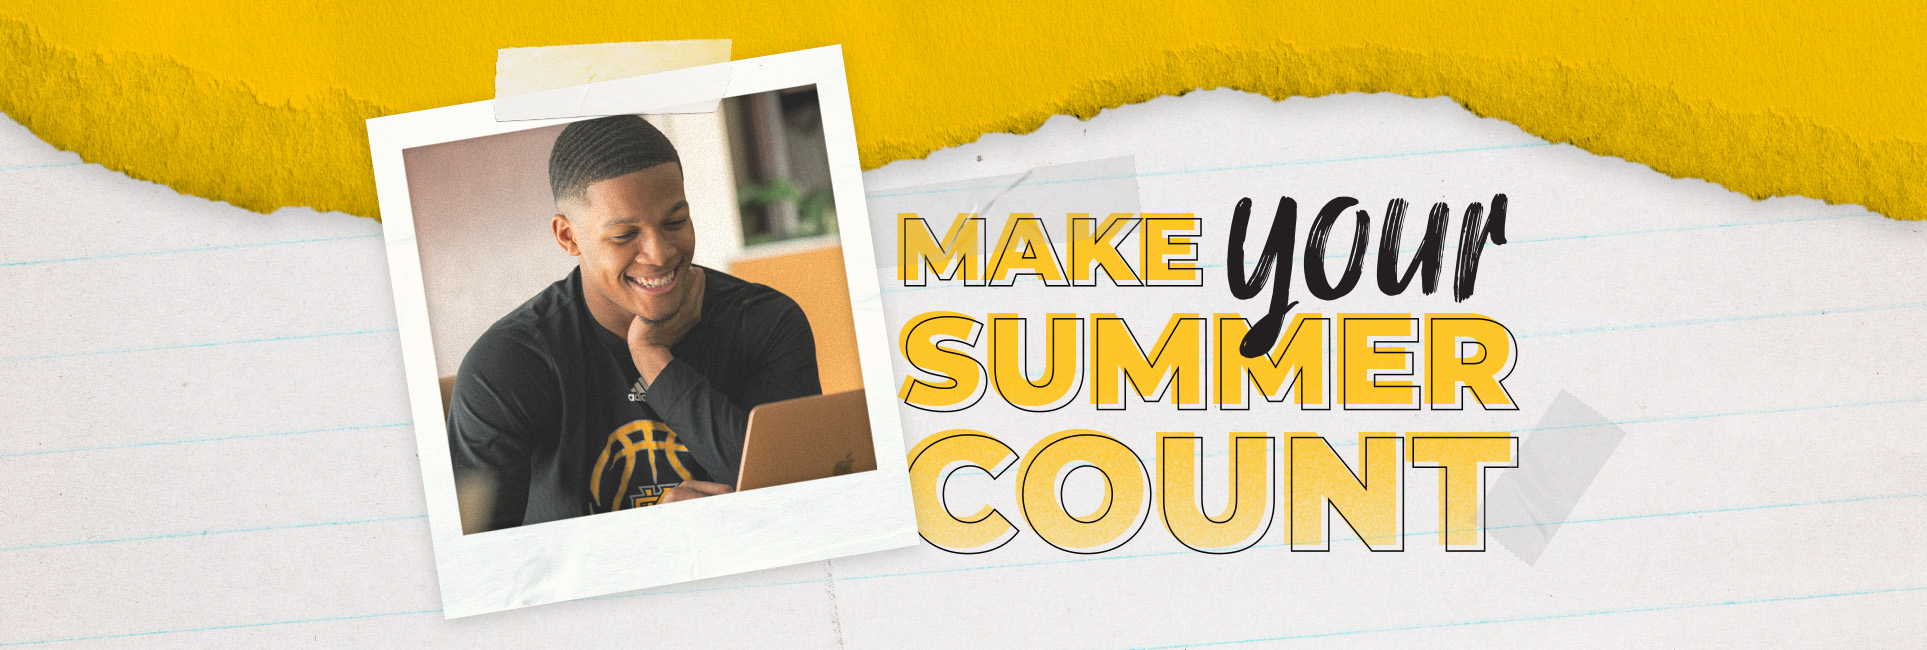 Make Your Summer Count -  Smiling KSU Student on computer